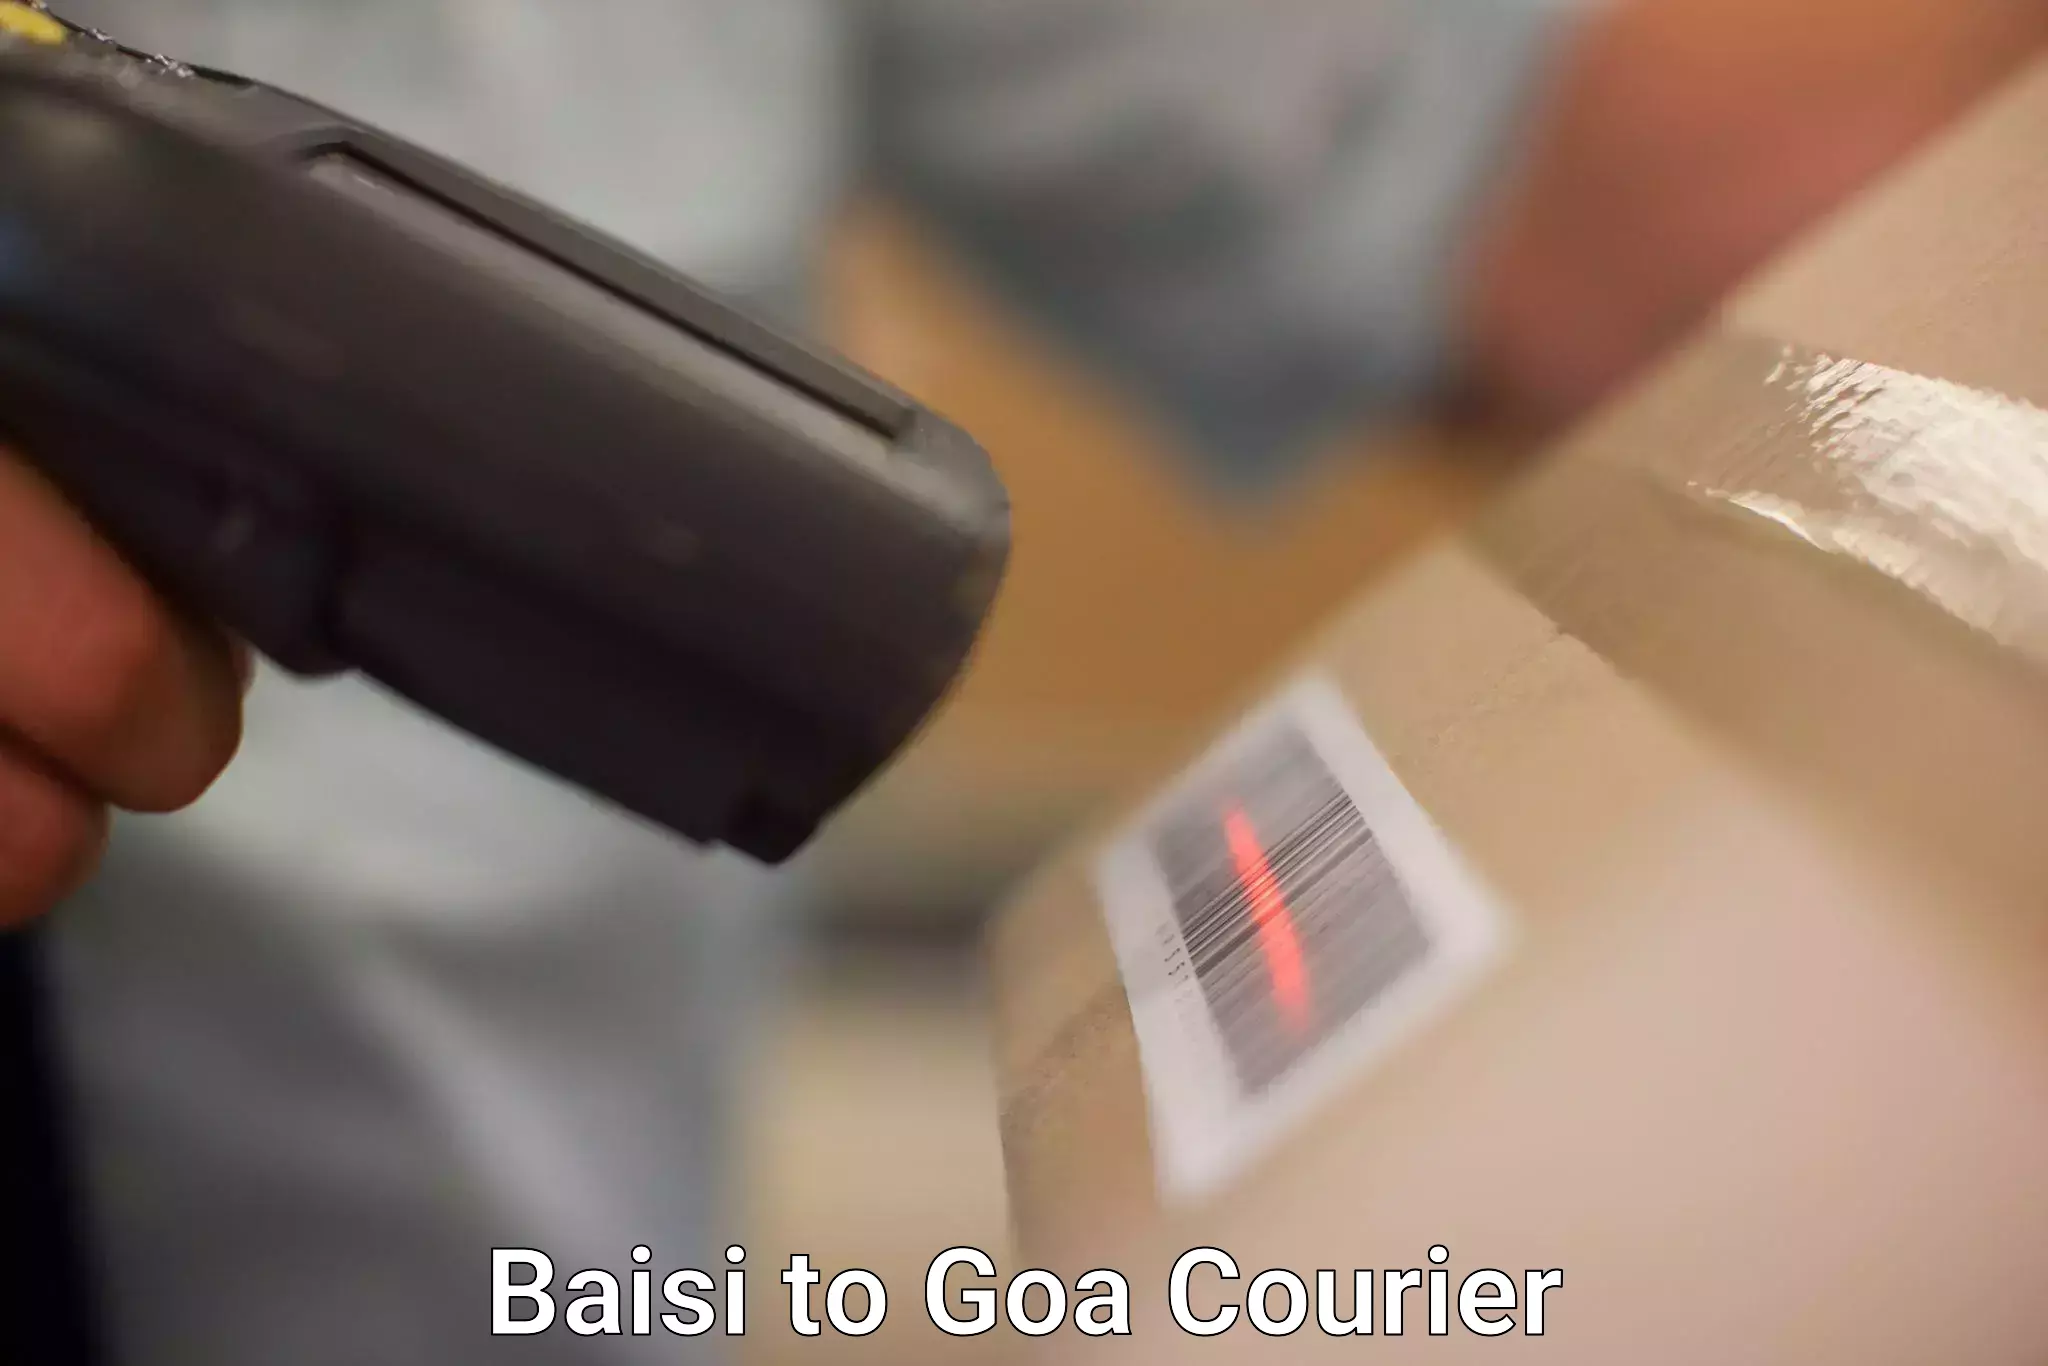 Advanced courier platforms Baisi to Goa